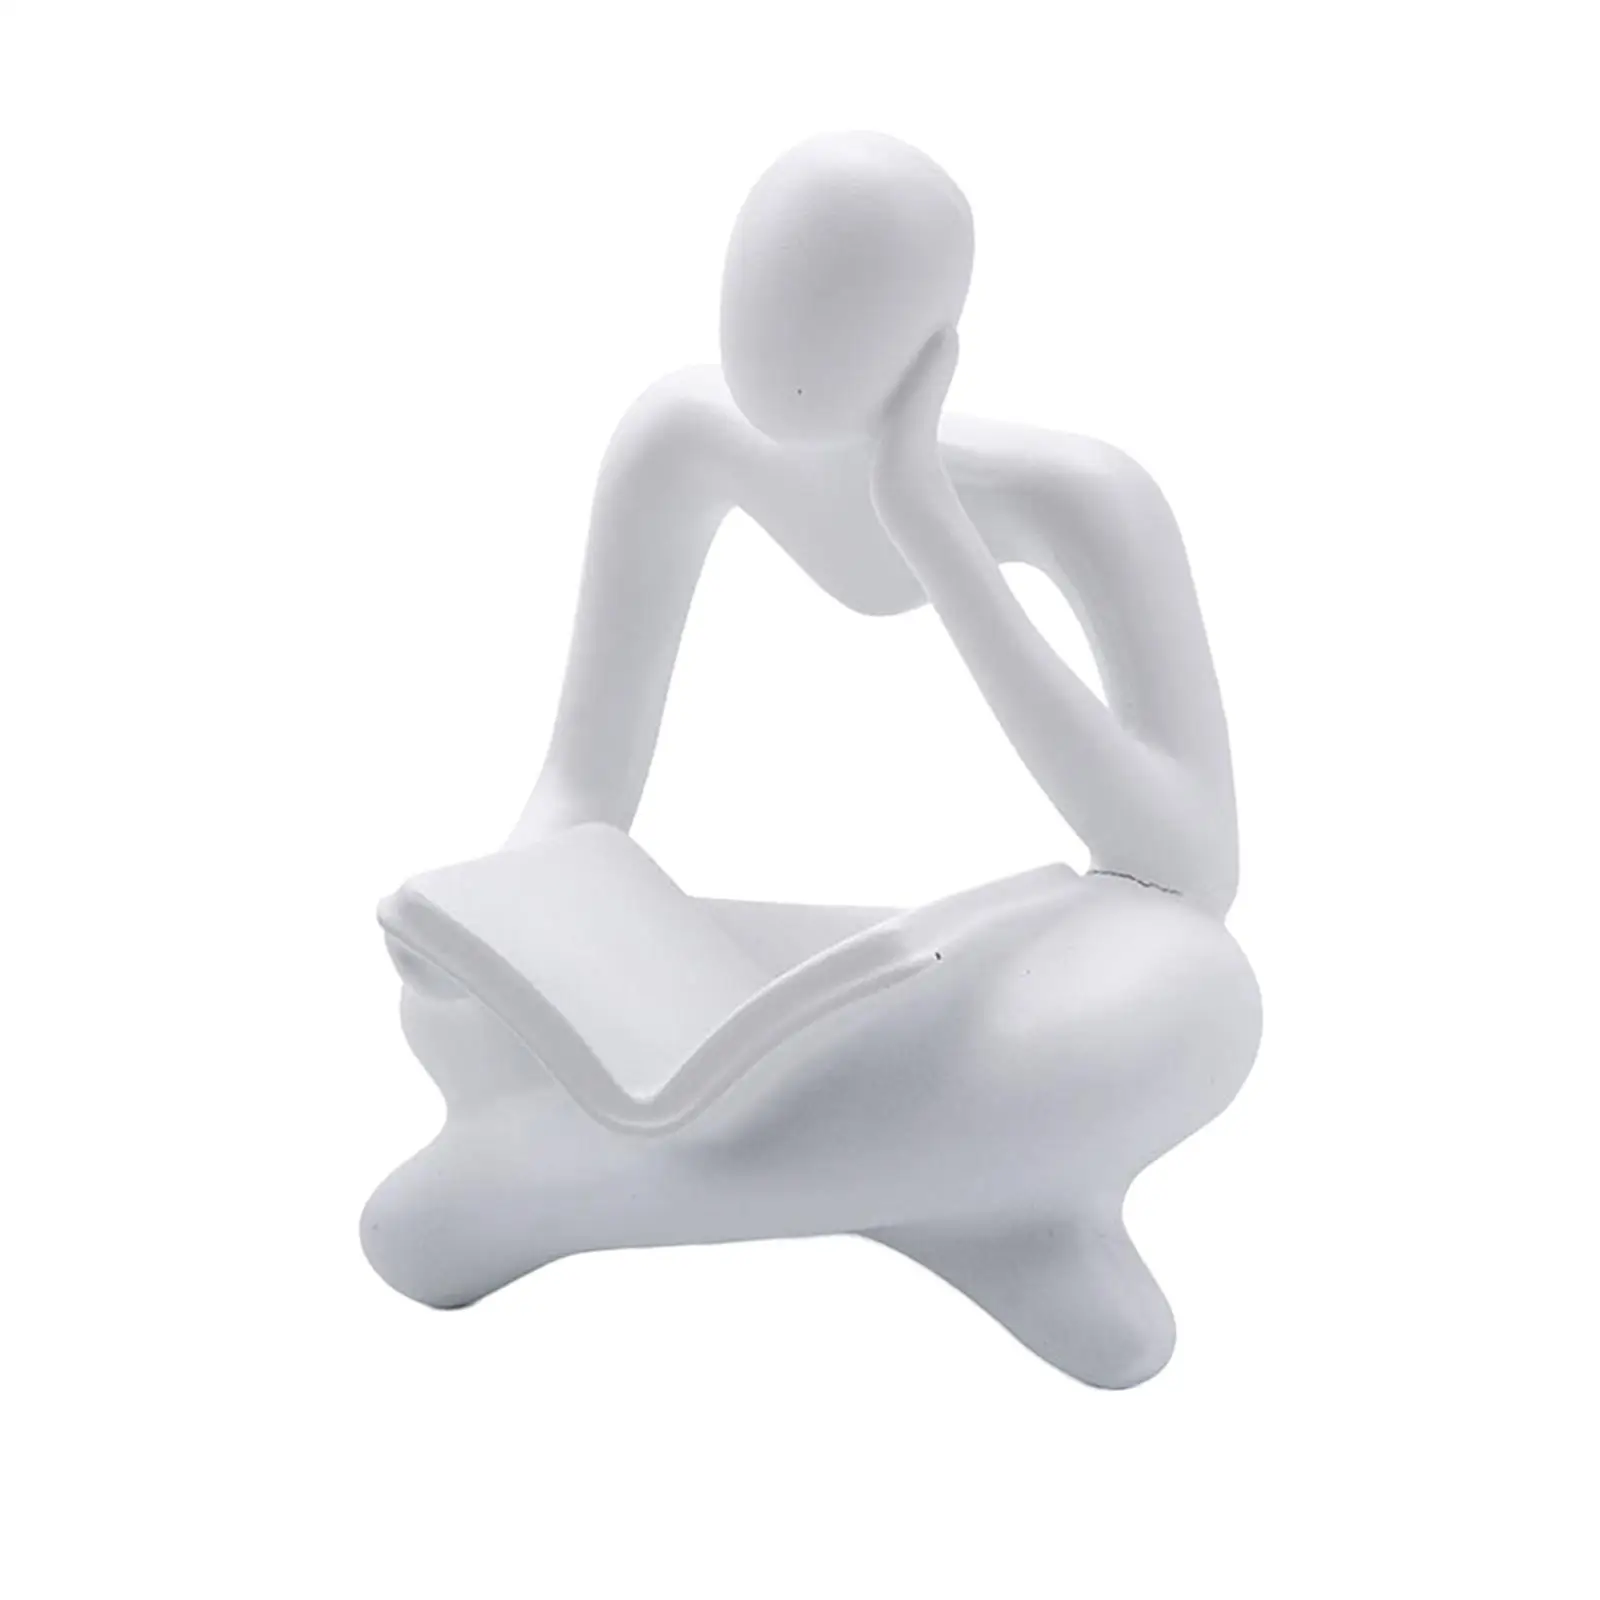 Resin Reader Statue Figures Elegant Art Crafts for Office Hotel Desktop Bookshelf